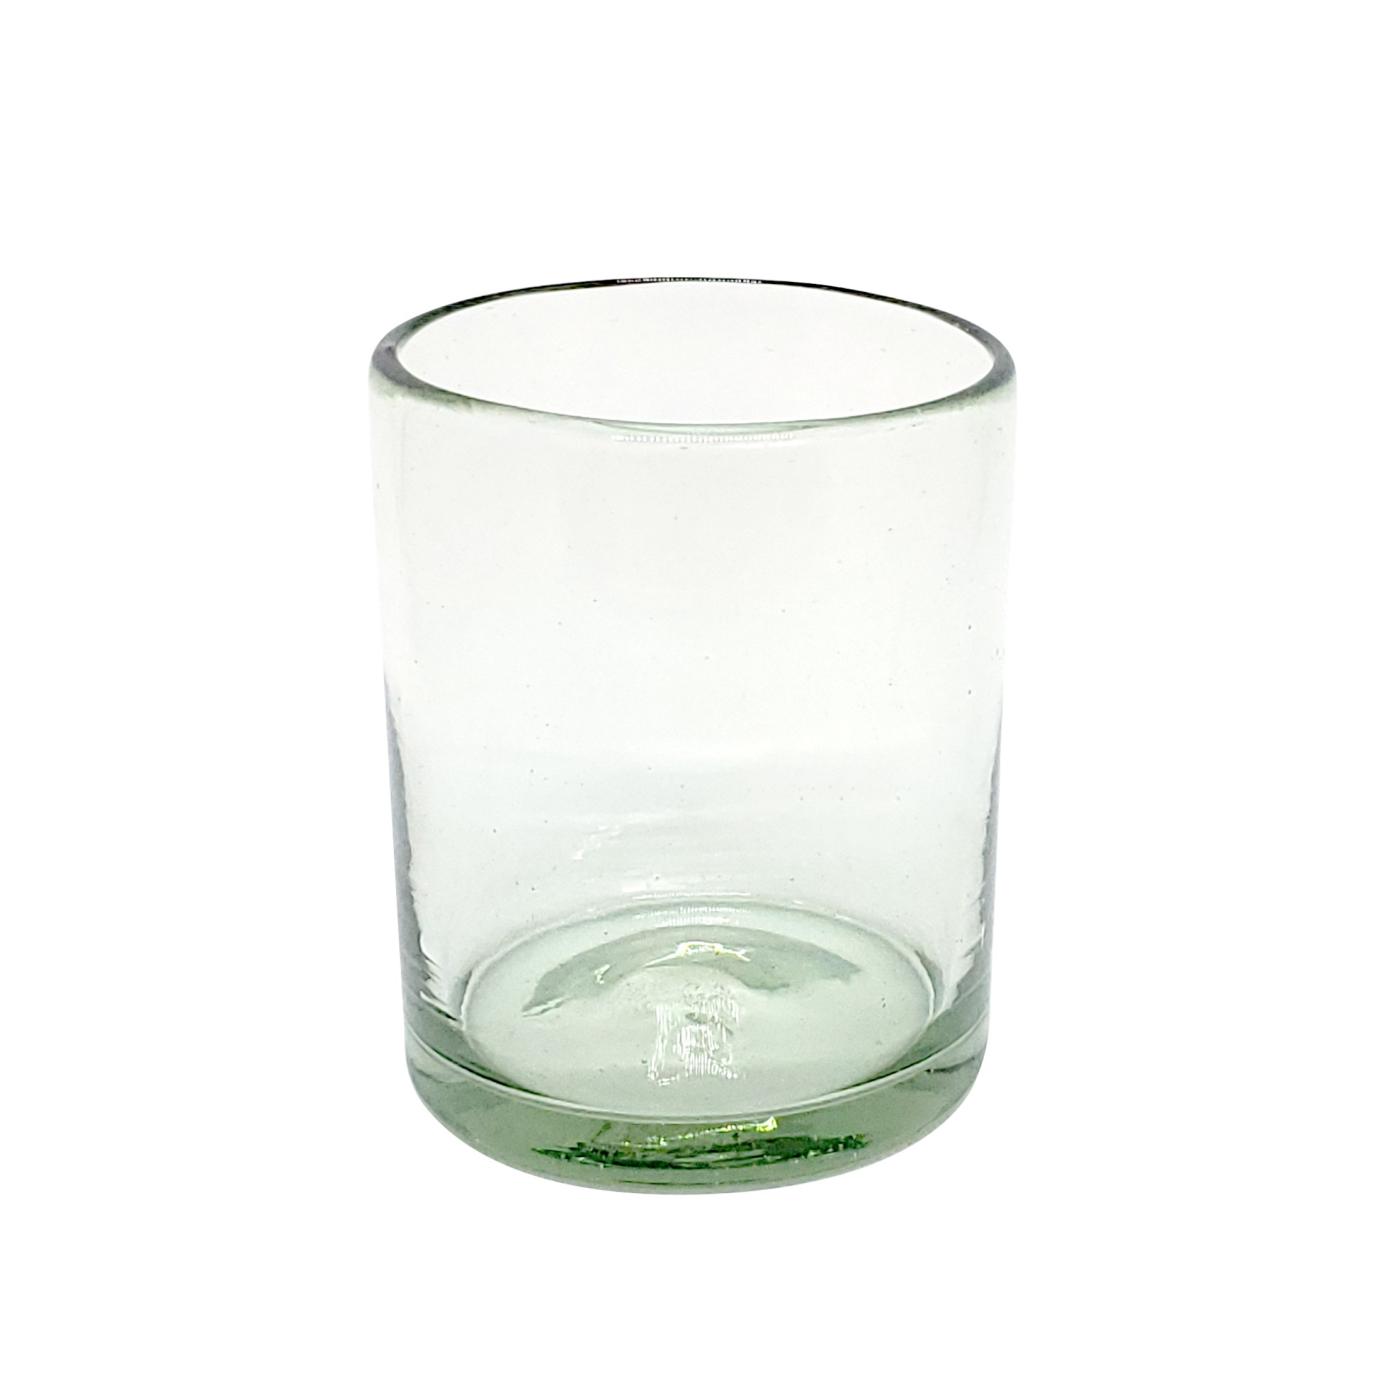 VIDRIO SOPLADO al Mayoreo / vasos chicos transparentes / Para una apariencia ms tradicional, stos vasos de vidrio soplado son creados de manera 100% artesanal.